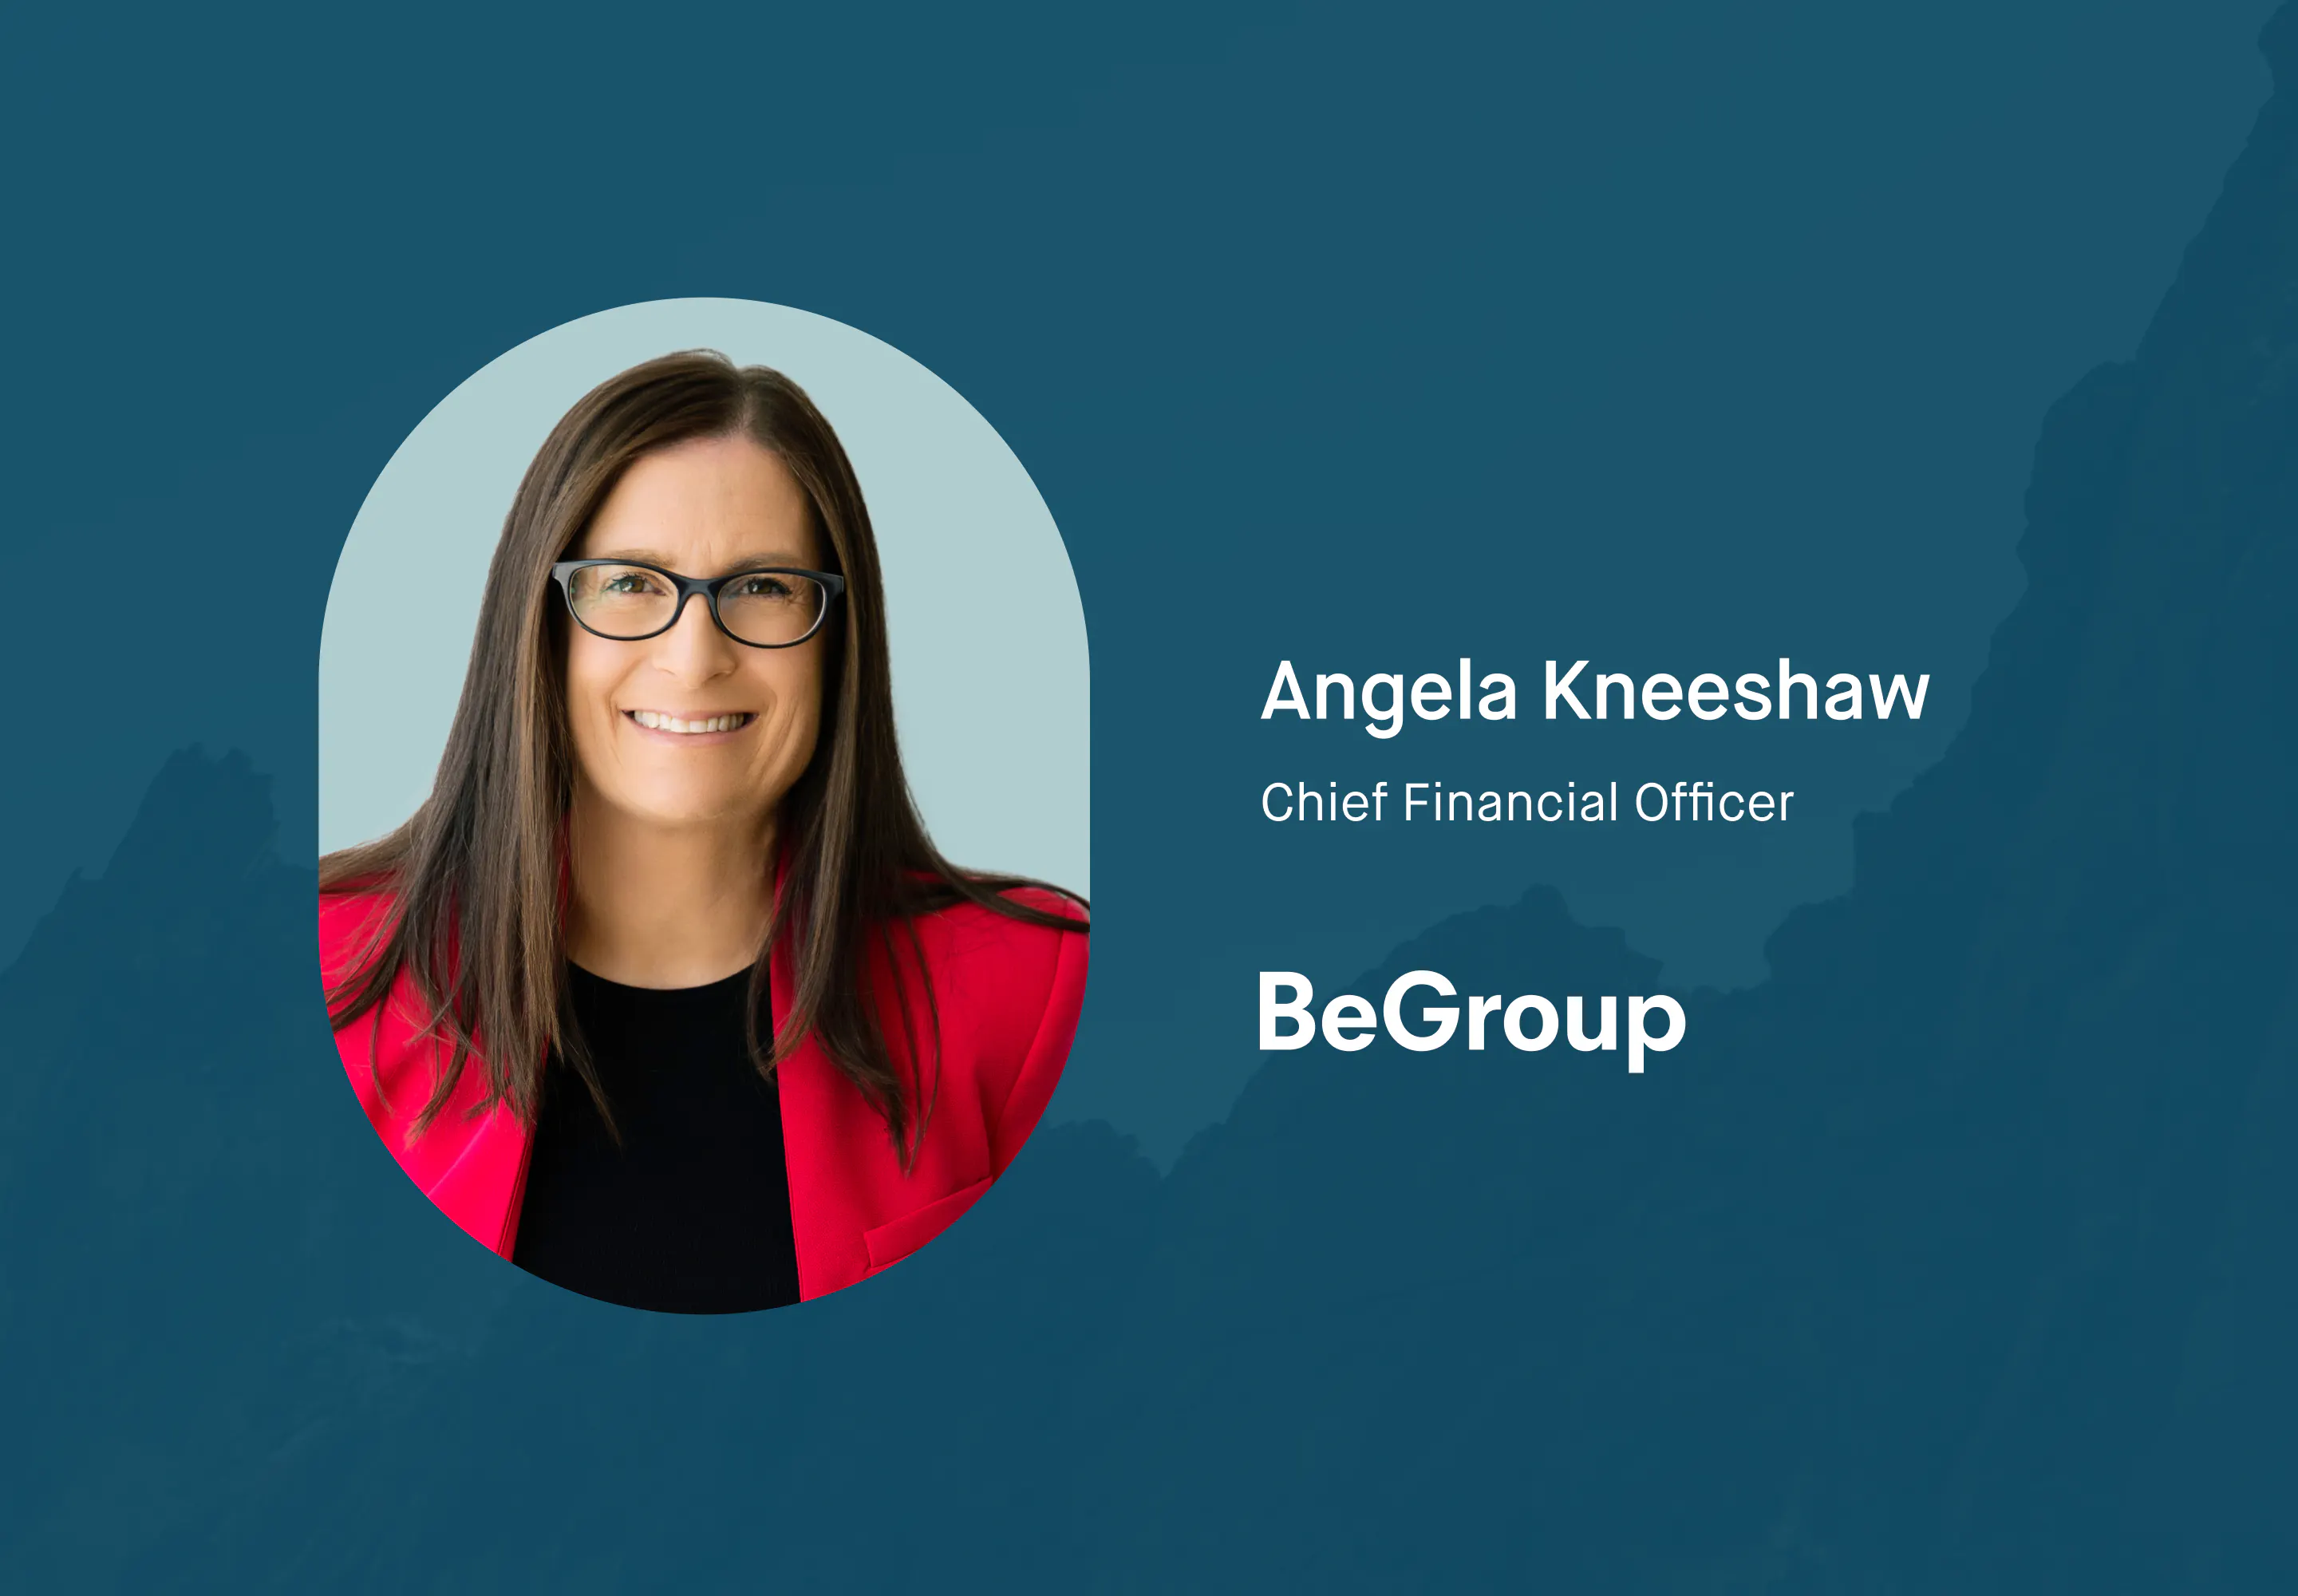 Angela Kneeshaw at BeGroup